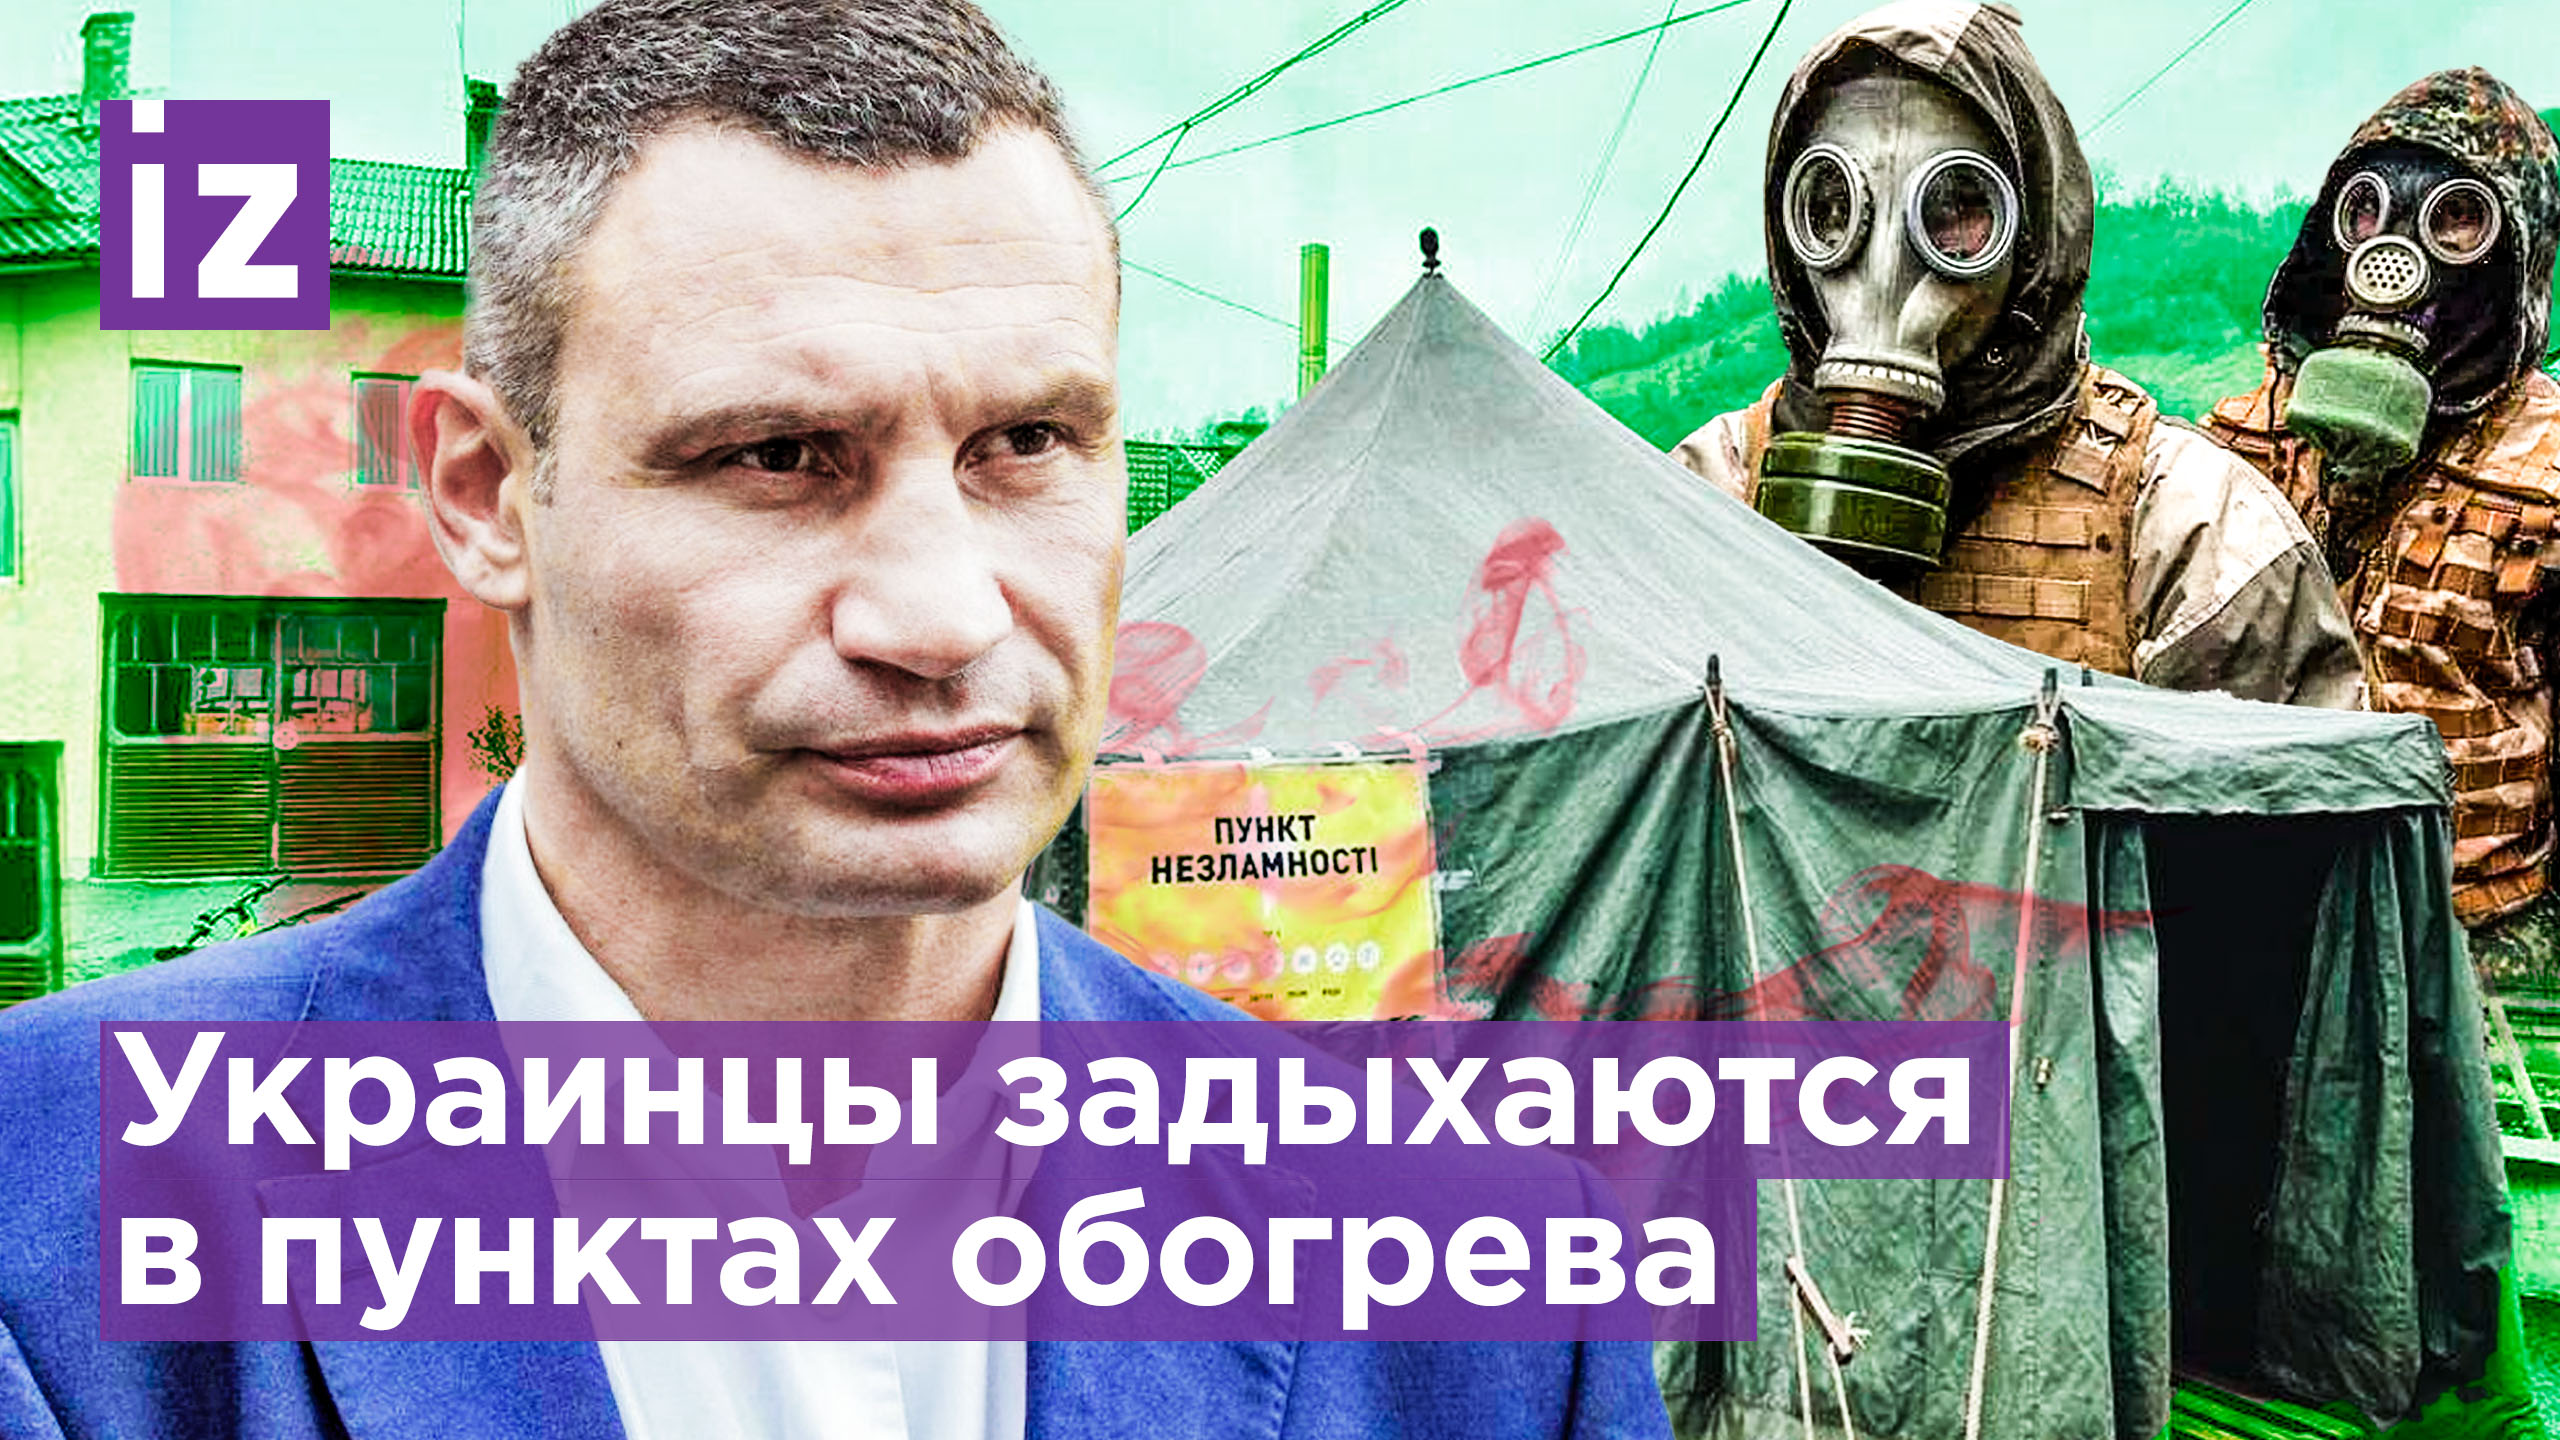 Пункты смерти в Киеве:  украинцы травятся угарным газом во время обогрева, Кличко все скрывает